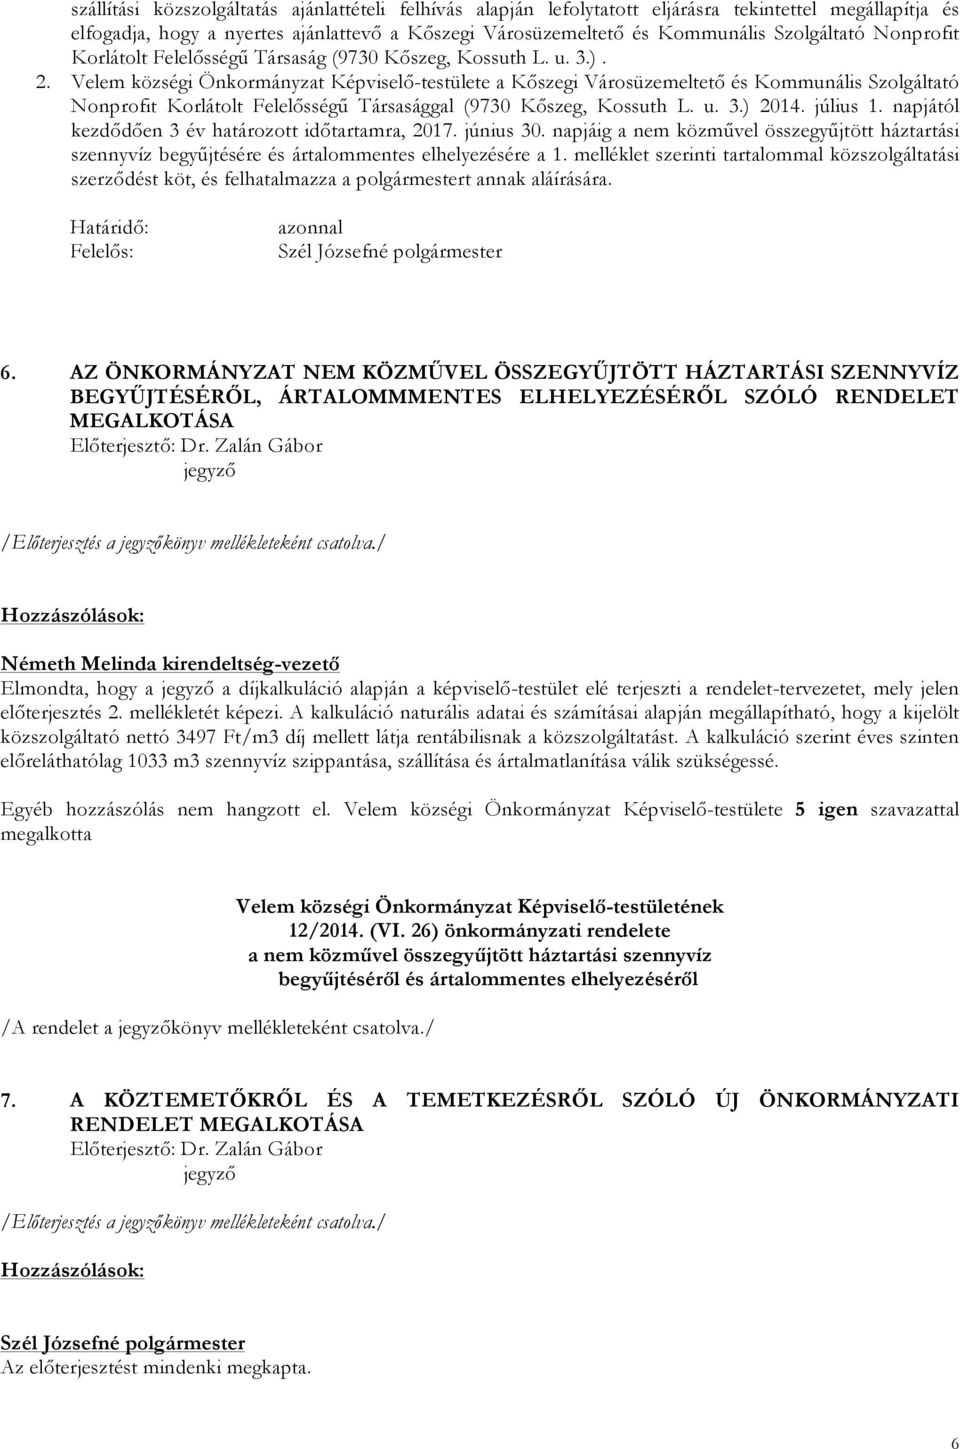 Velem községi Önkormányzat Képviselő-testülete a Kőszegi Városüzemeltető és Kommunális Szolgáltató Nonprofit Korlátolt Felelősségű Társasággal (9730 Kőszeg, Kossuth L. u. 3.) 2014. július 1.